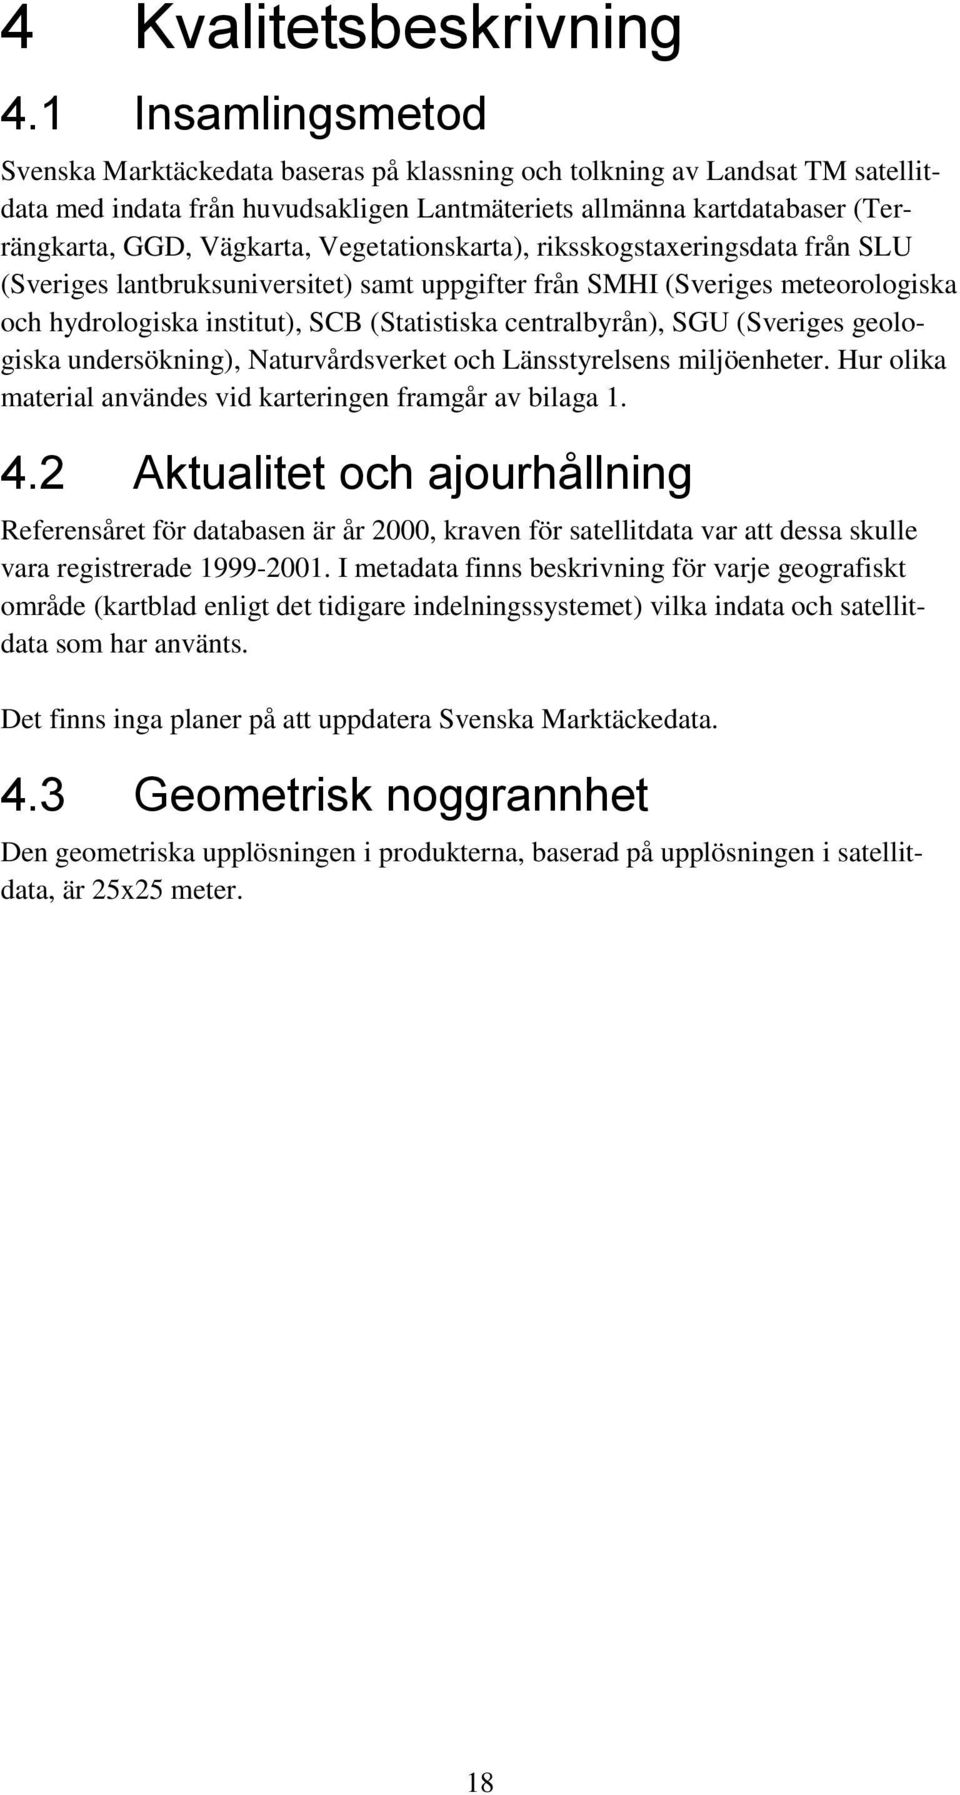 Vegetationskarta), riksskogstaxeringsdata från SLU (Sveriges lantbruksuniversitet) samt uppgifter från SMHI (Sveriges meteorologiska och hydrologiska institut), SCB (Statistiska centralbyrån), SGU